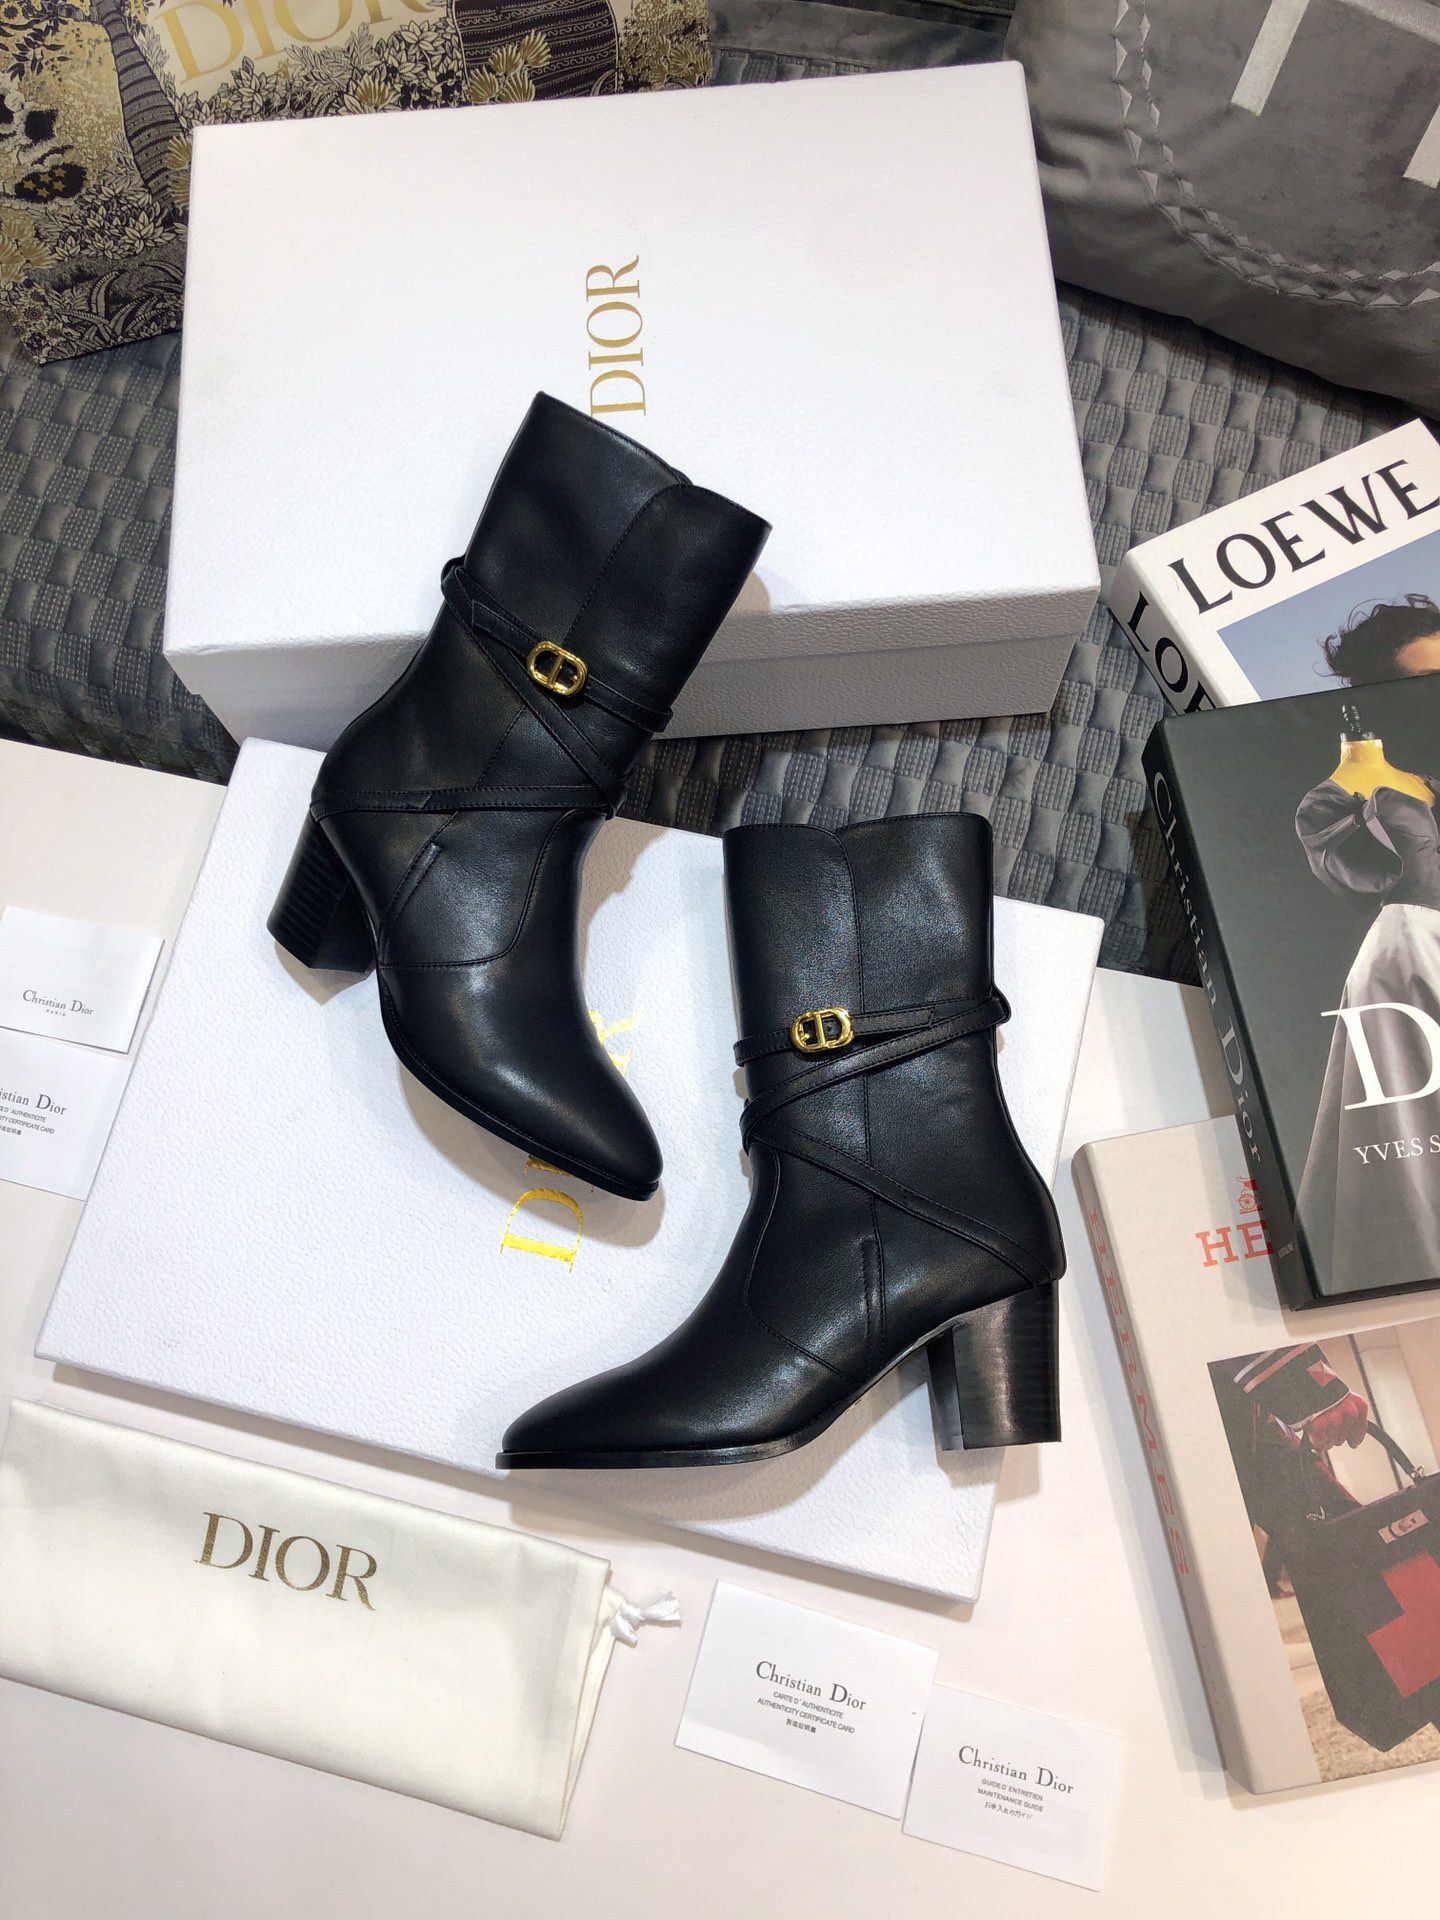 Dior Boots Shoes 7cm heels Dior23592